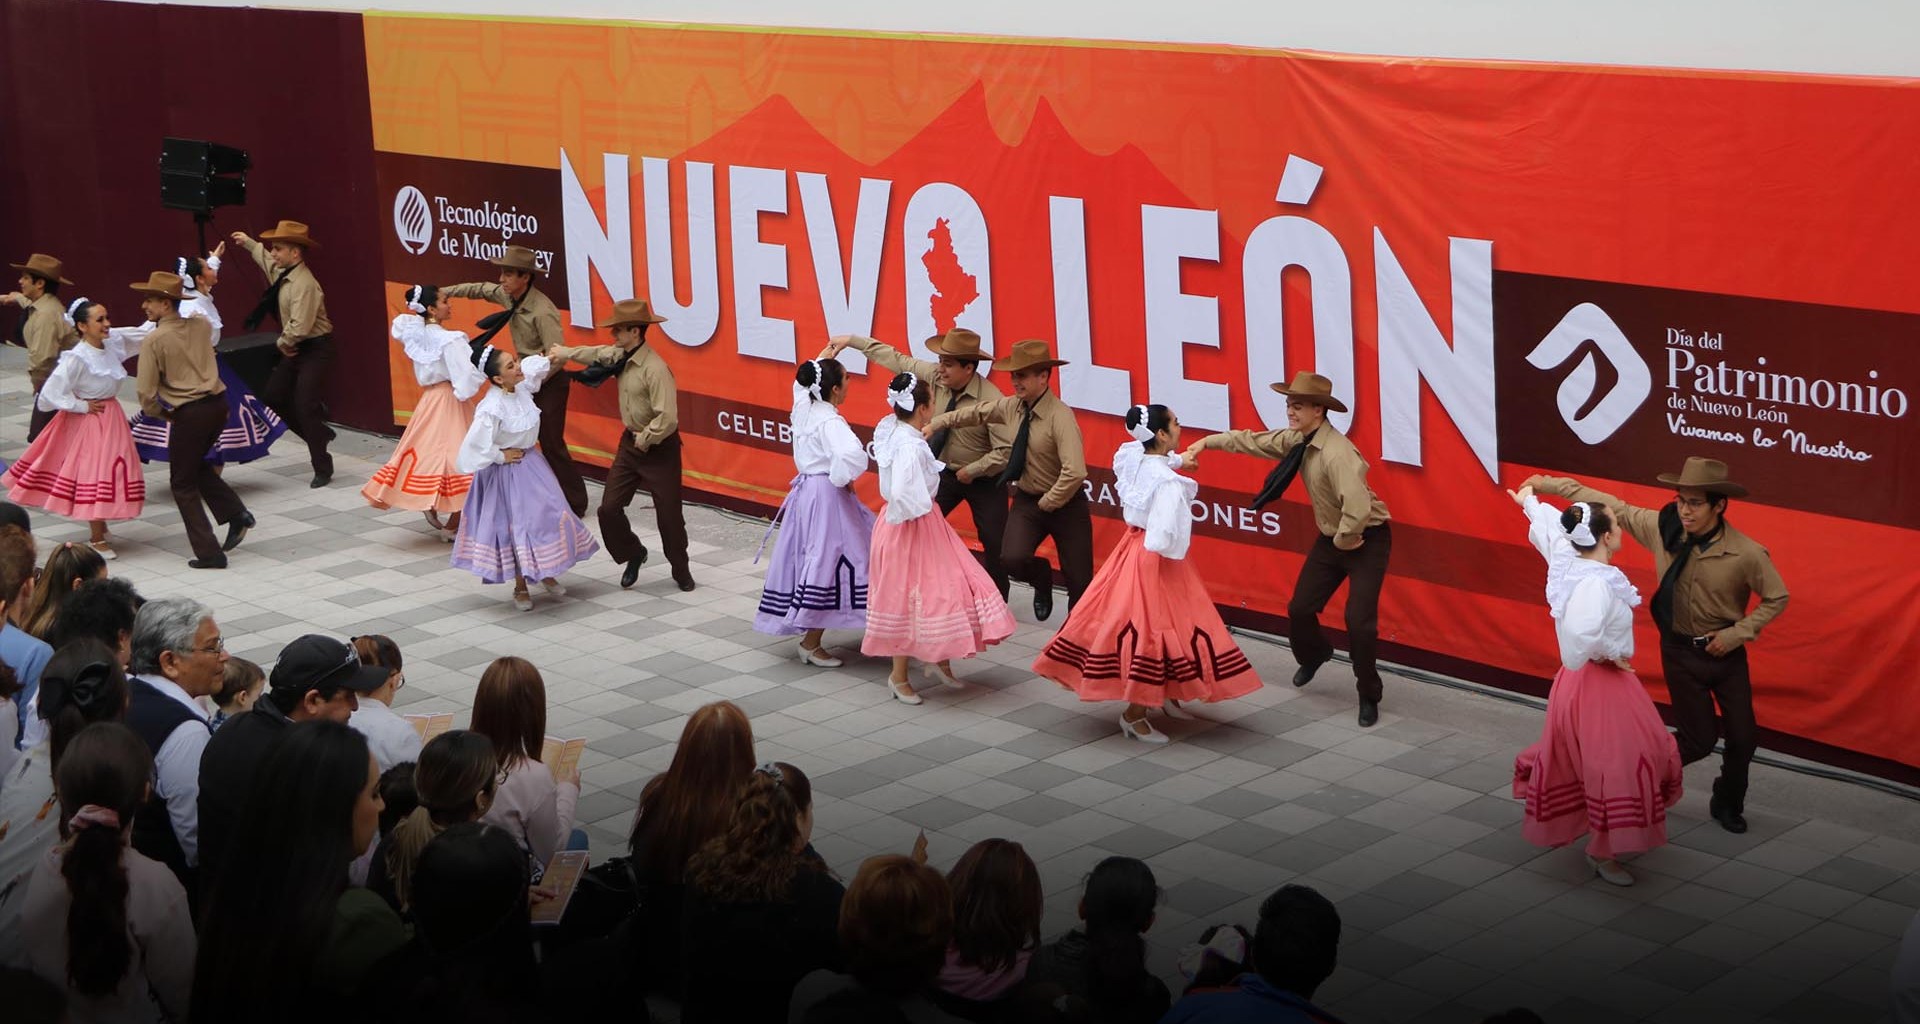 Día del Patrimonio de Nuevo León en Campus Monterrey